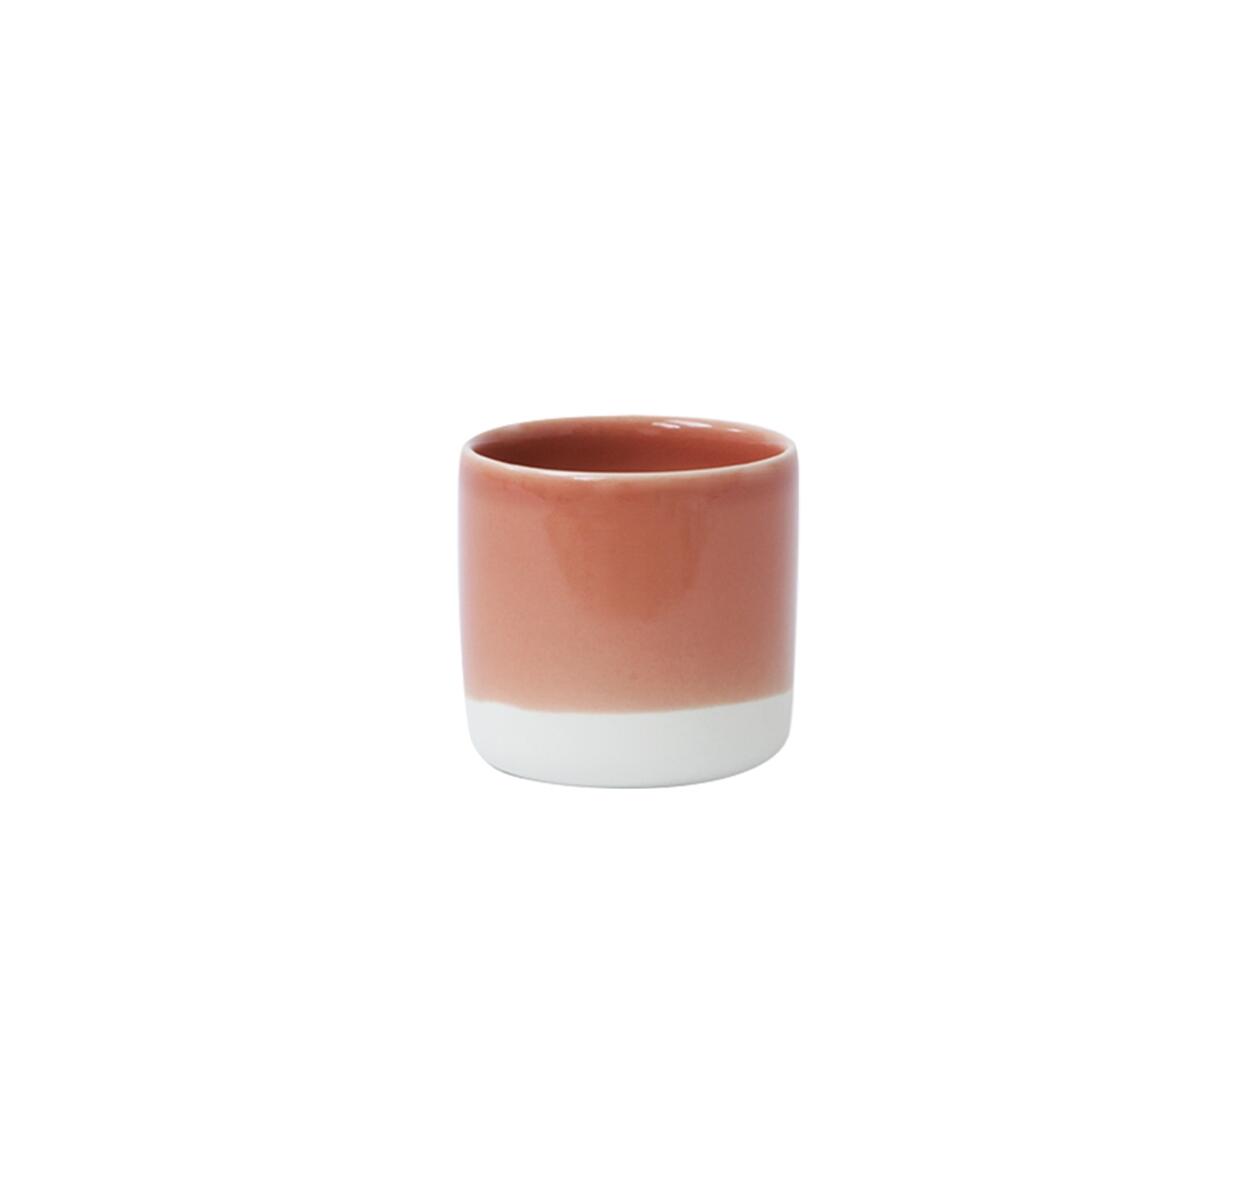 Gobelet S Cantine terre cuite, boutique de céramique en ligne Jars